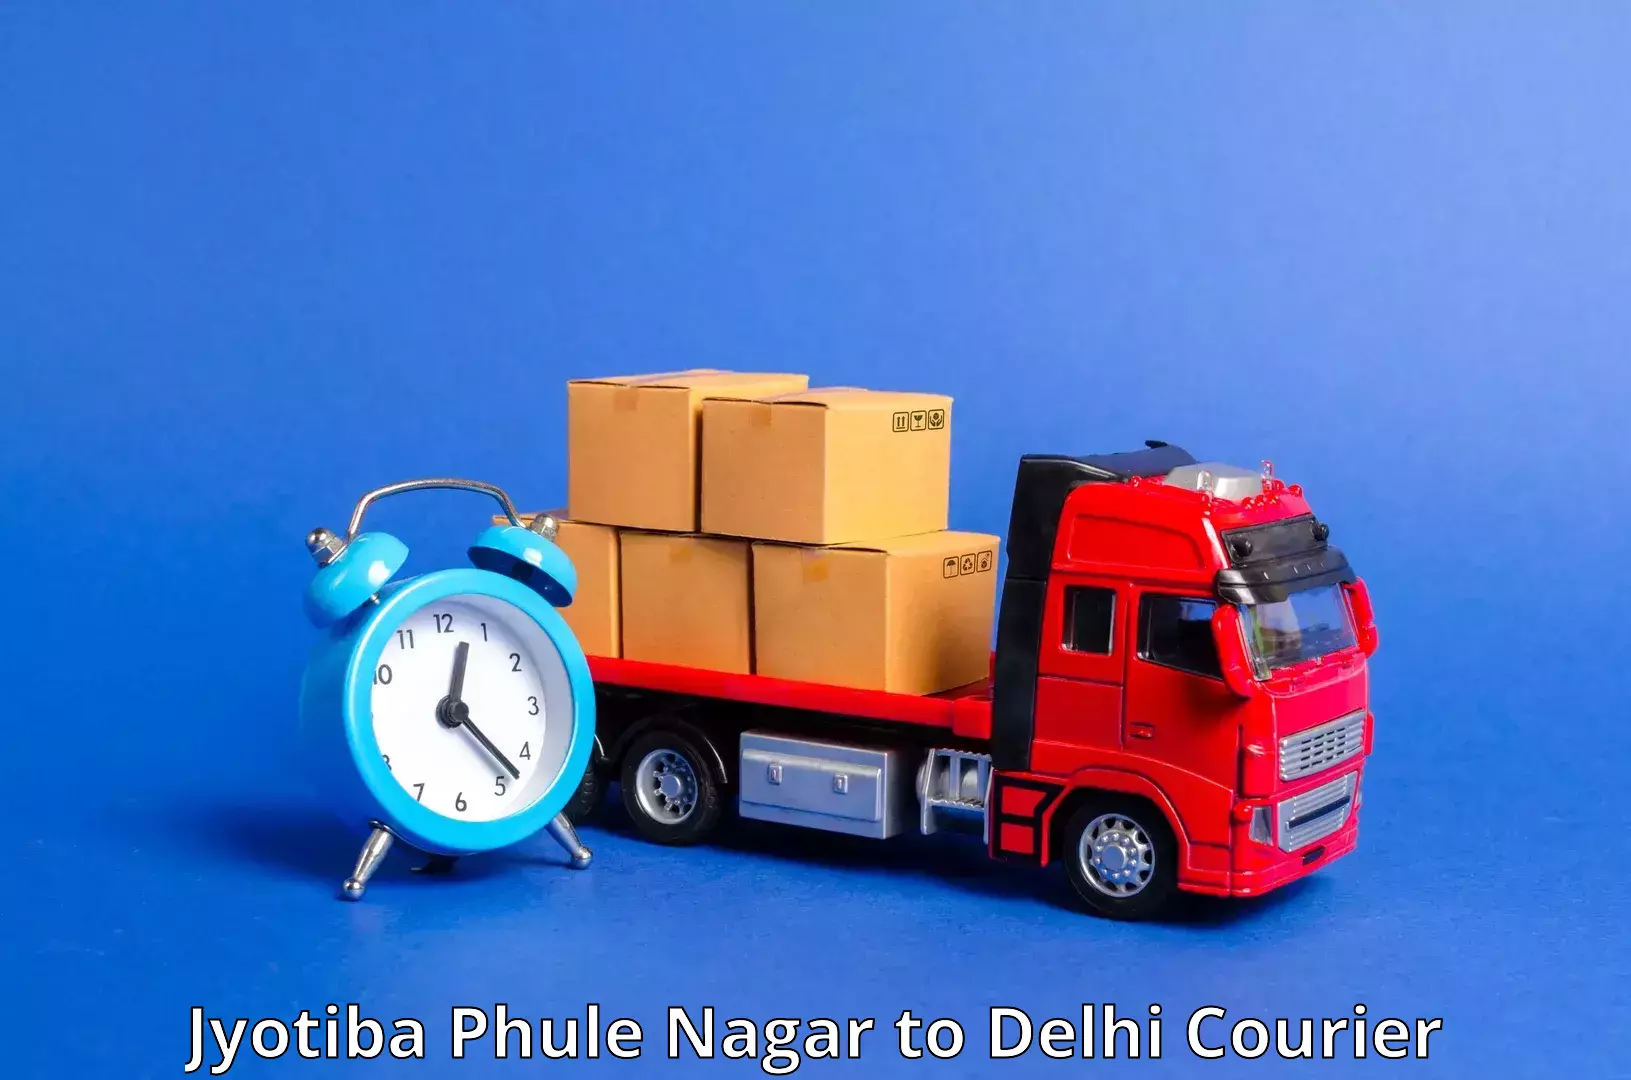 Doorstep delivery service Jyotiba Phule Nagar to Jamia Hamdard New Delhi